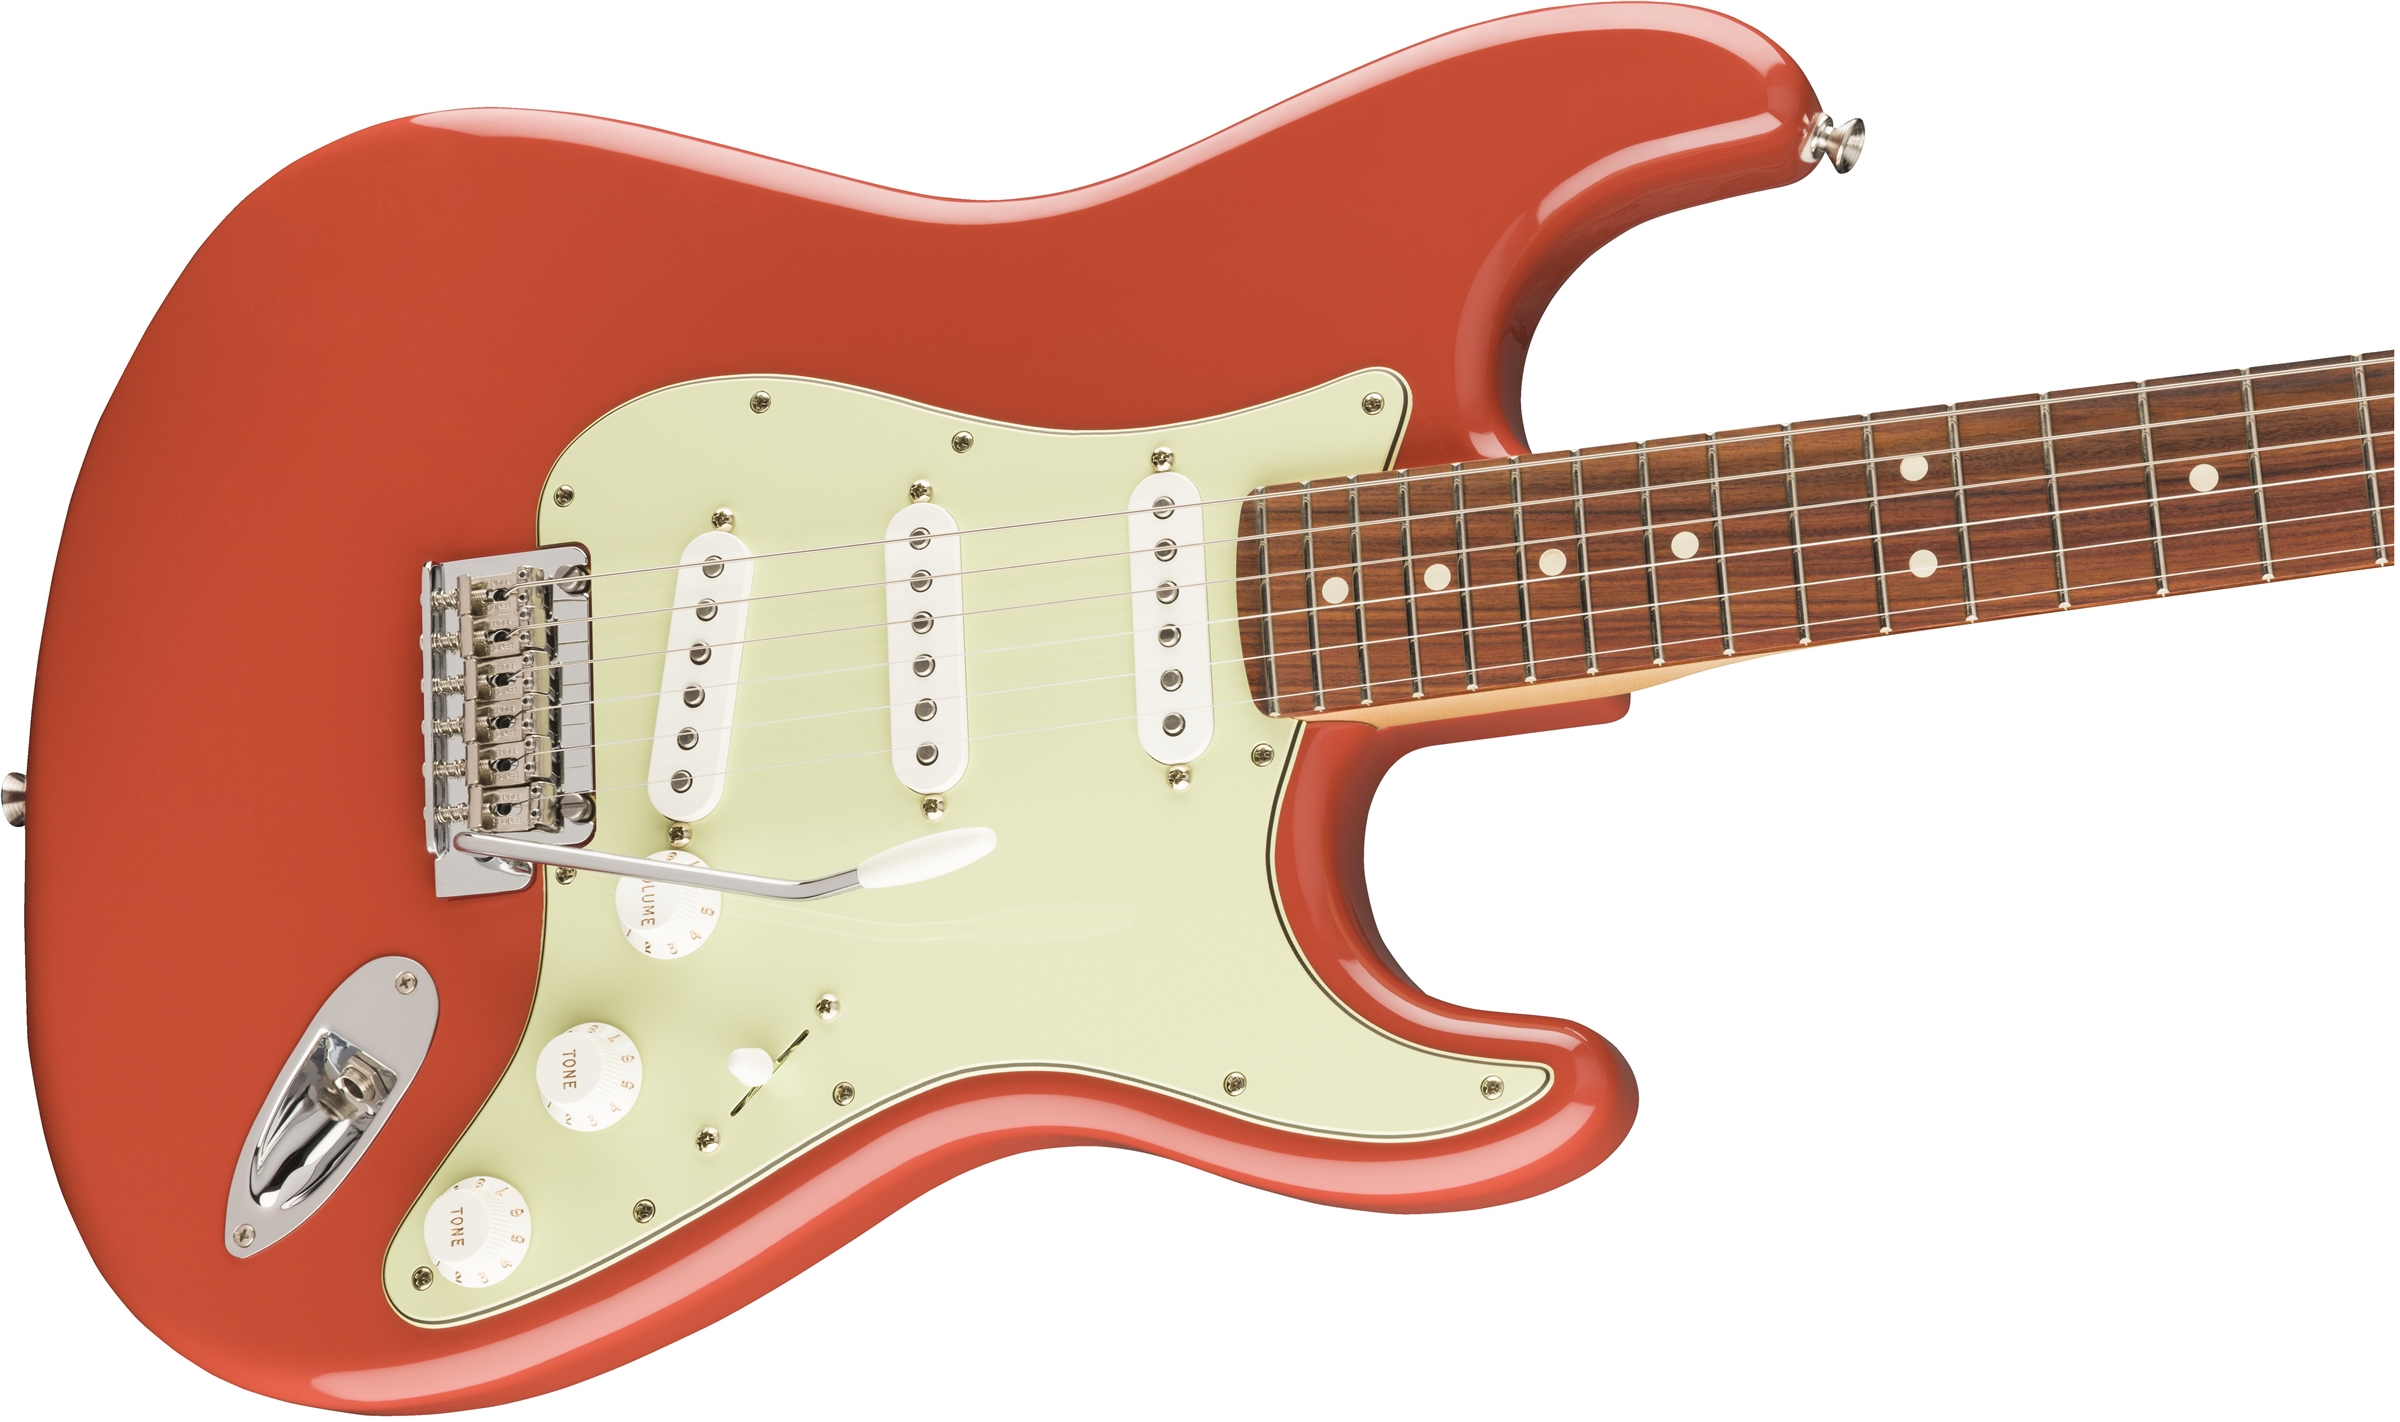 Fender Strat Player Ltd Mex 3s Trem Pf - Fiesta Red - Elektrische gitaar in Str-vorm - Variation 3